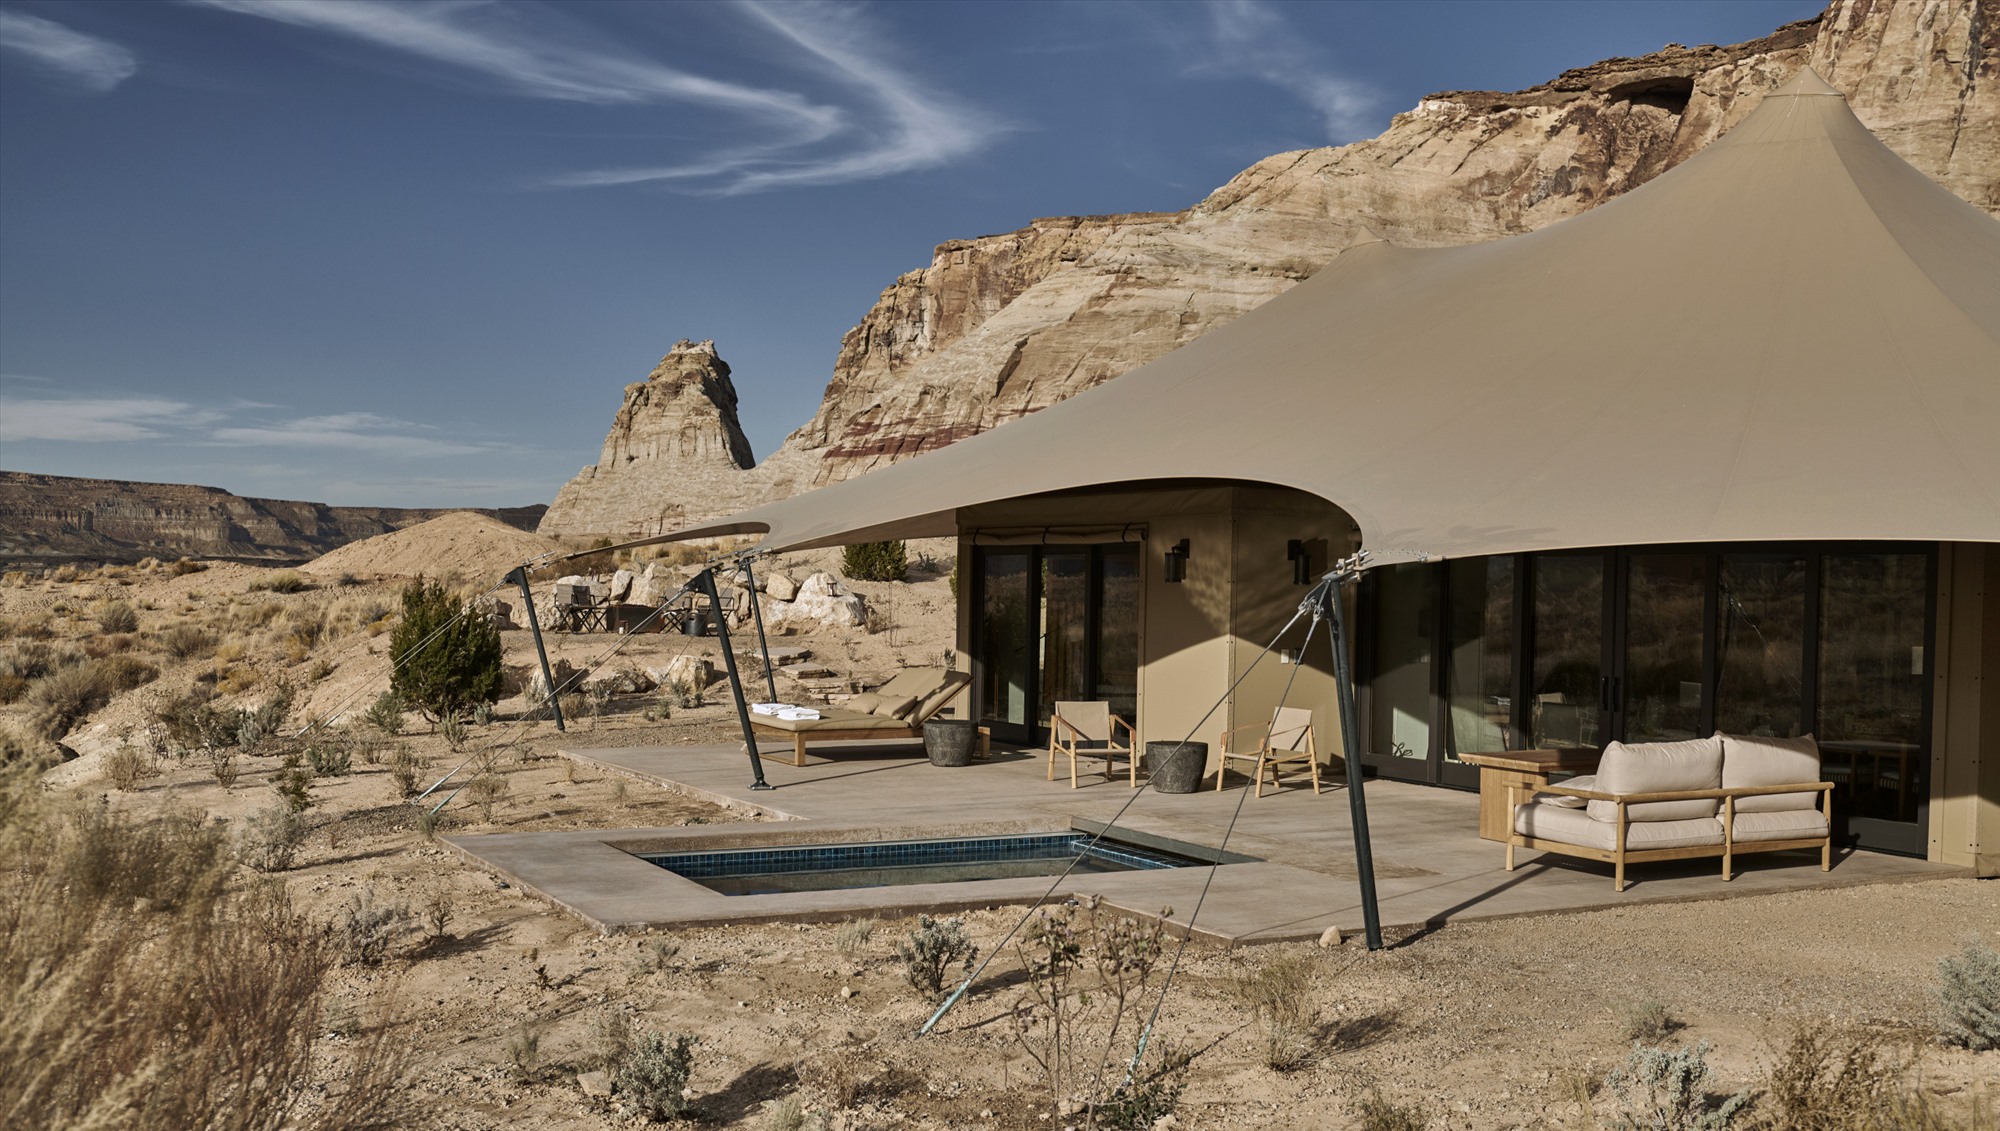 Năm 2014, khu nghỉ dưỡng xây dựng thêm 36 căn biệt thự riêng với tên gọi The Mesa at Amangiri. Giá bán mỗi căn từ 7,5 đến 15 triệu USD. Năm 2020, nơi đây tiếp tục bổ sung thêm trại Sarika với 10 gian lều có sức chứa 30 khách.